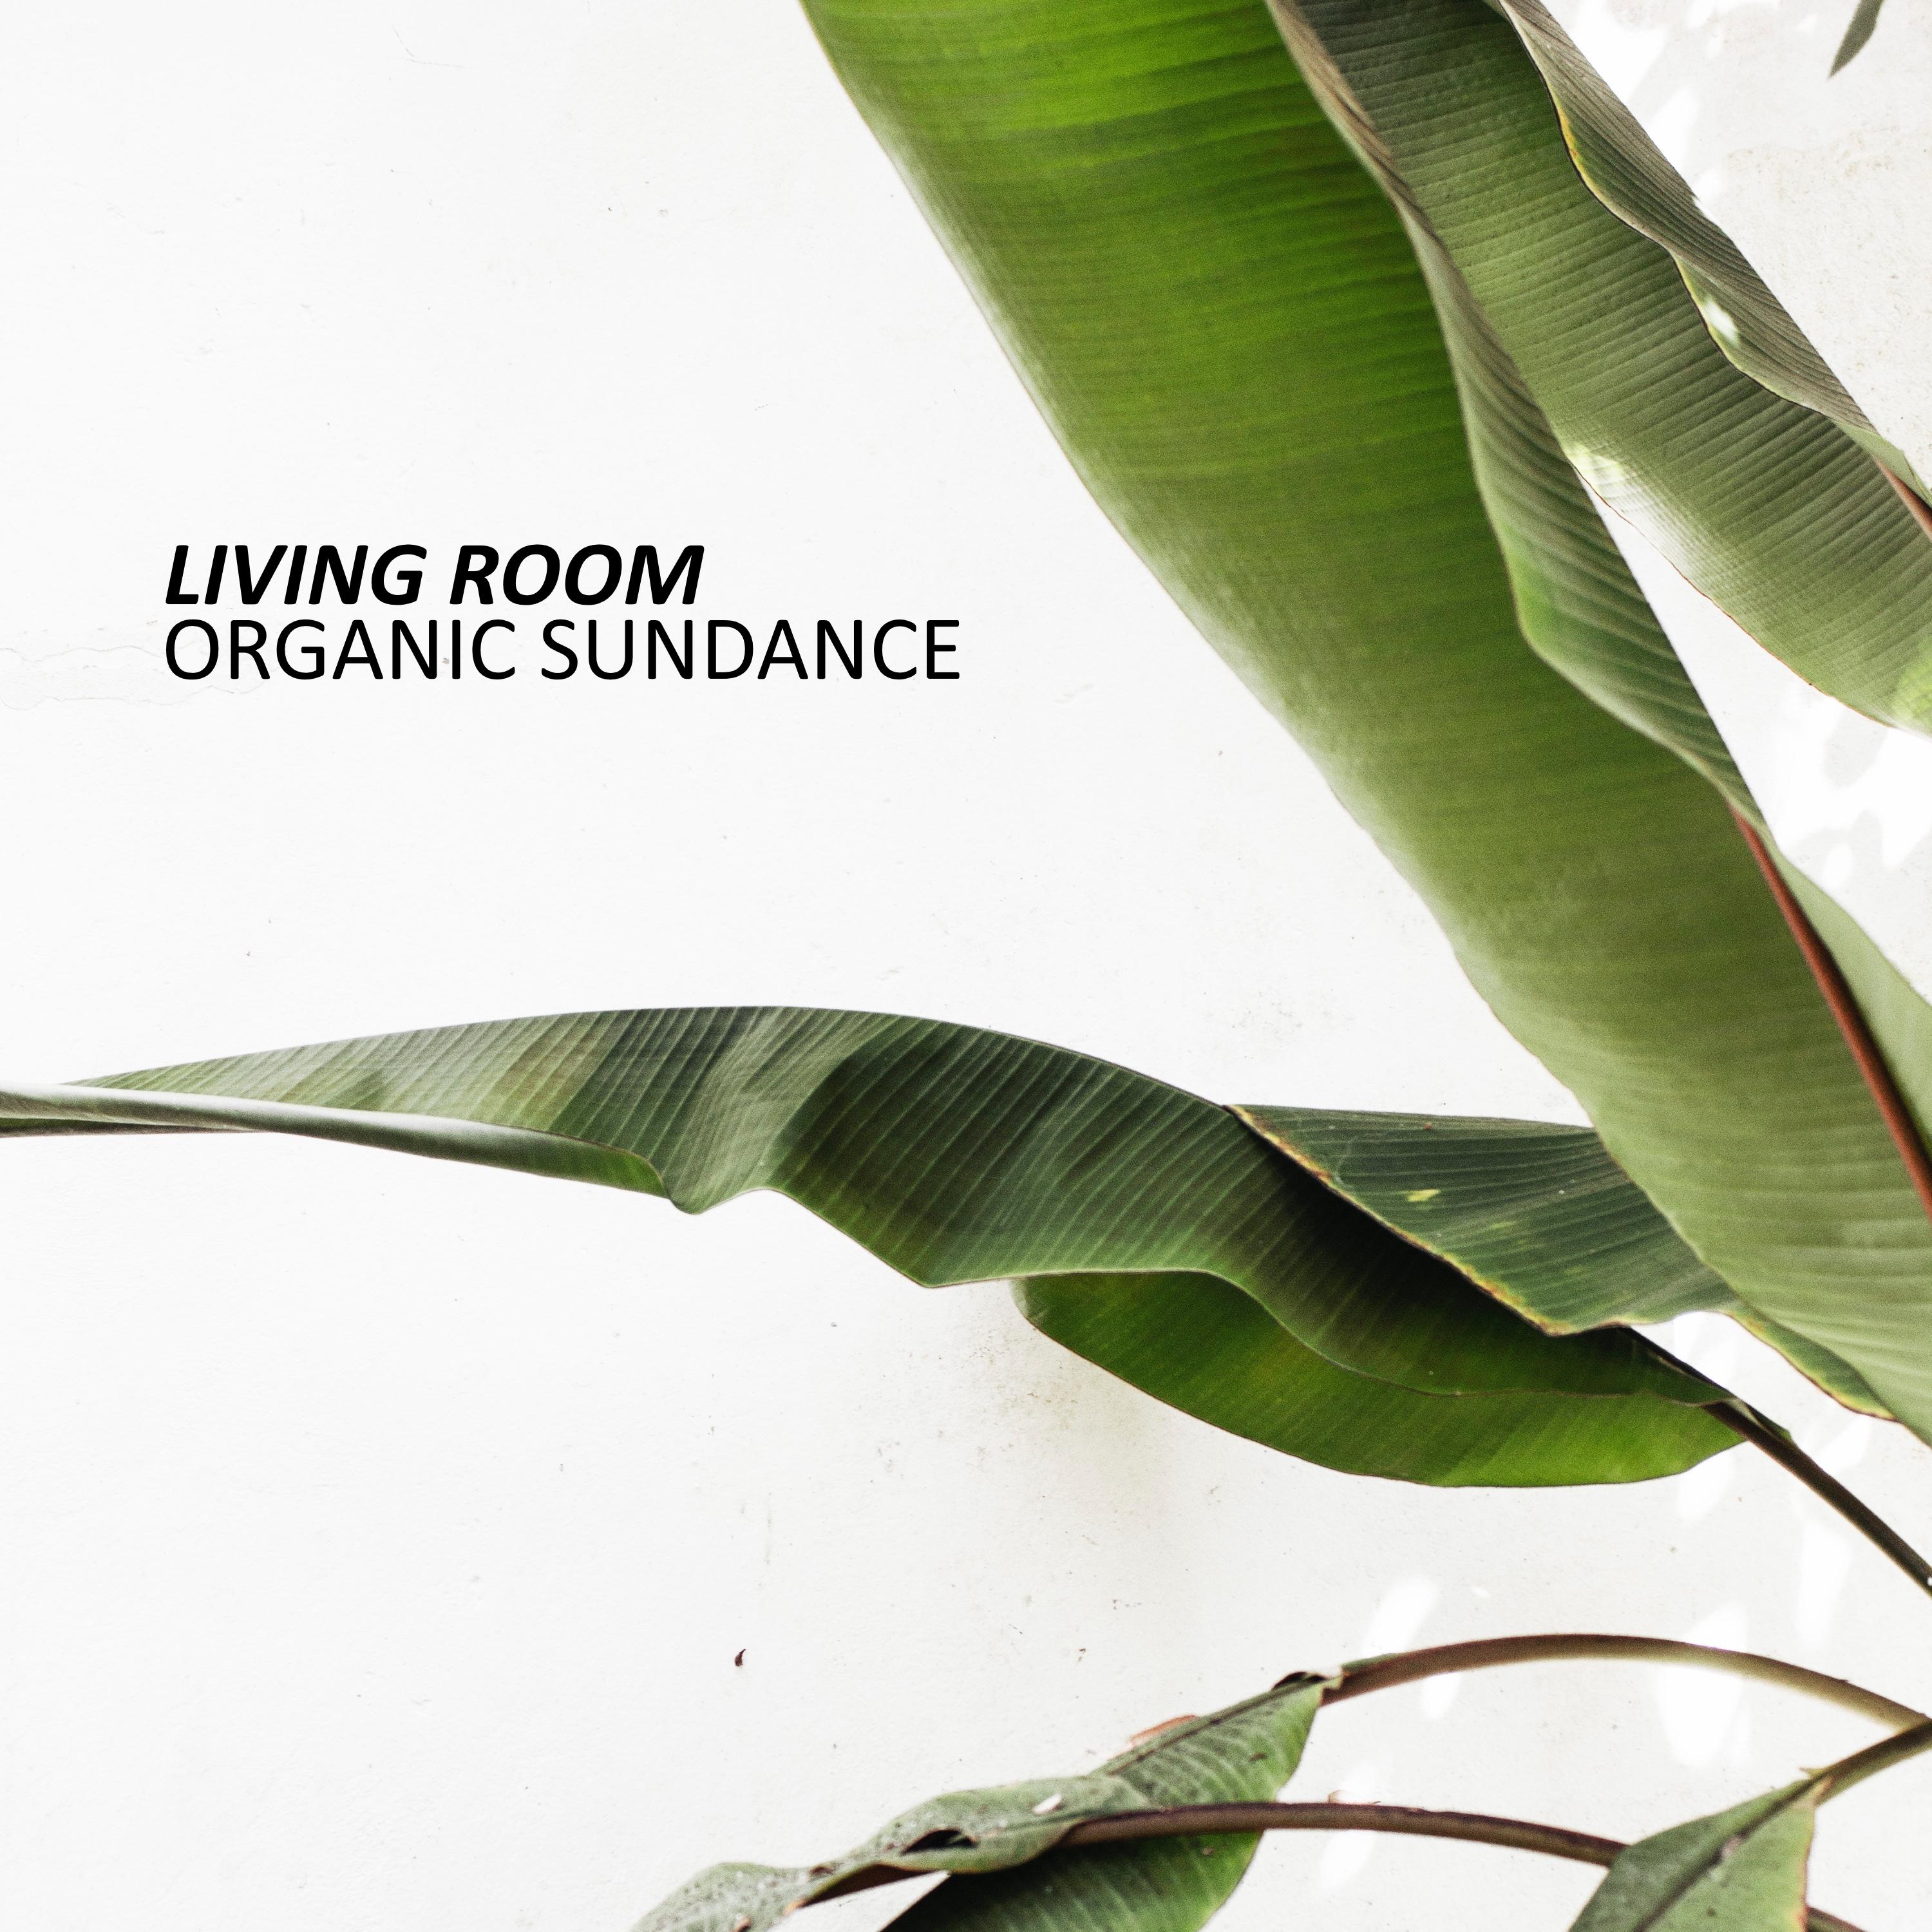 Organic Sundance